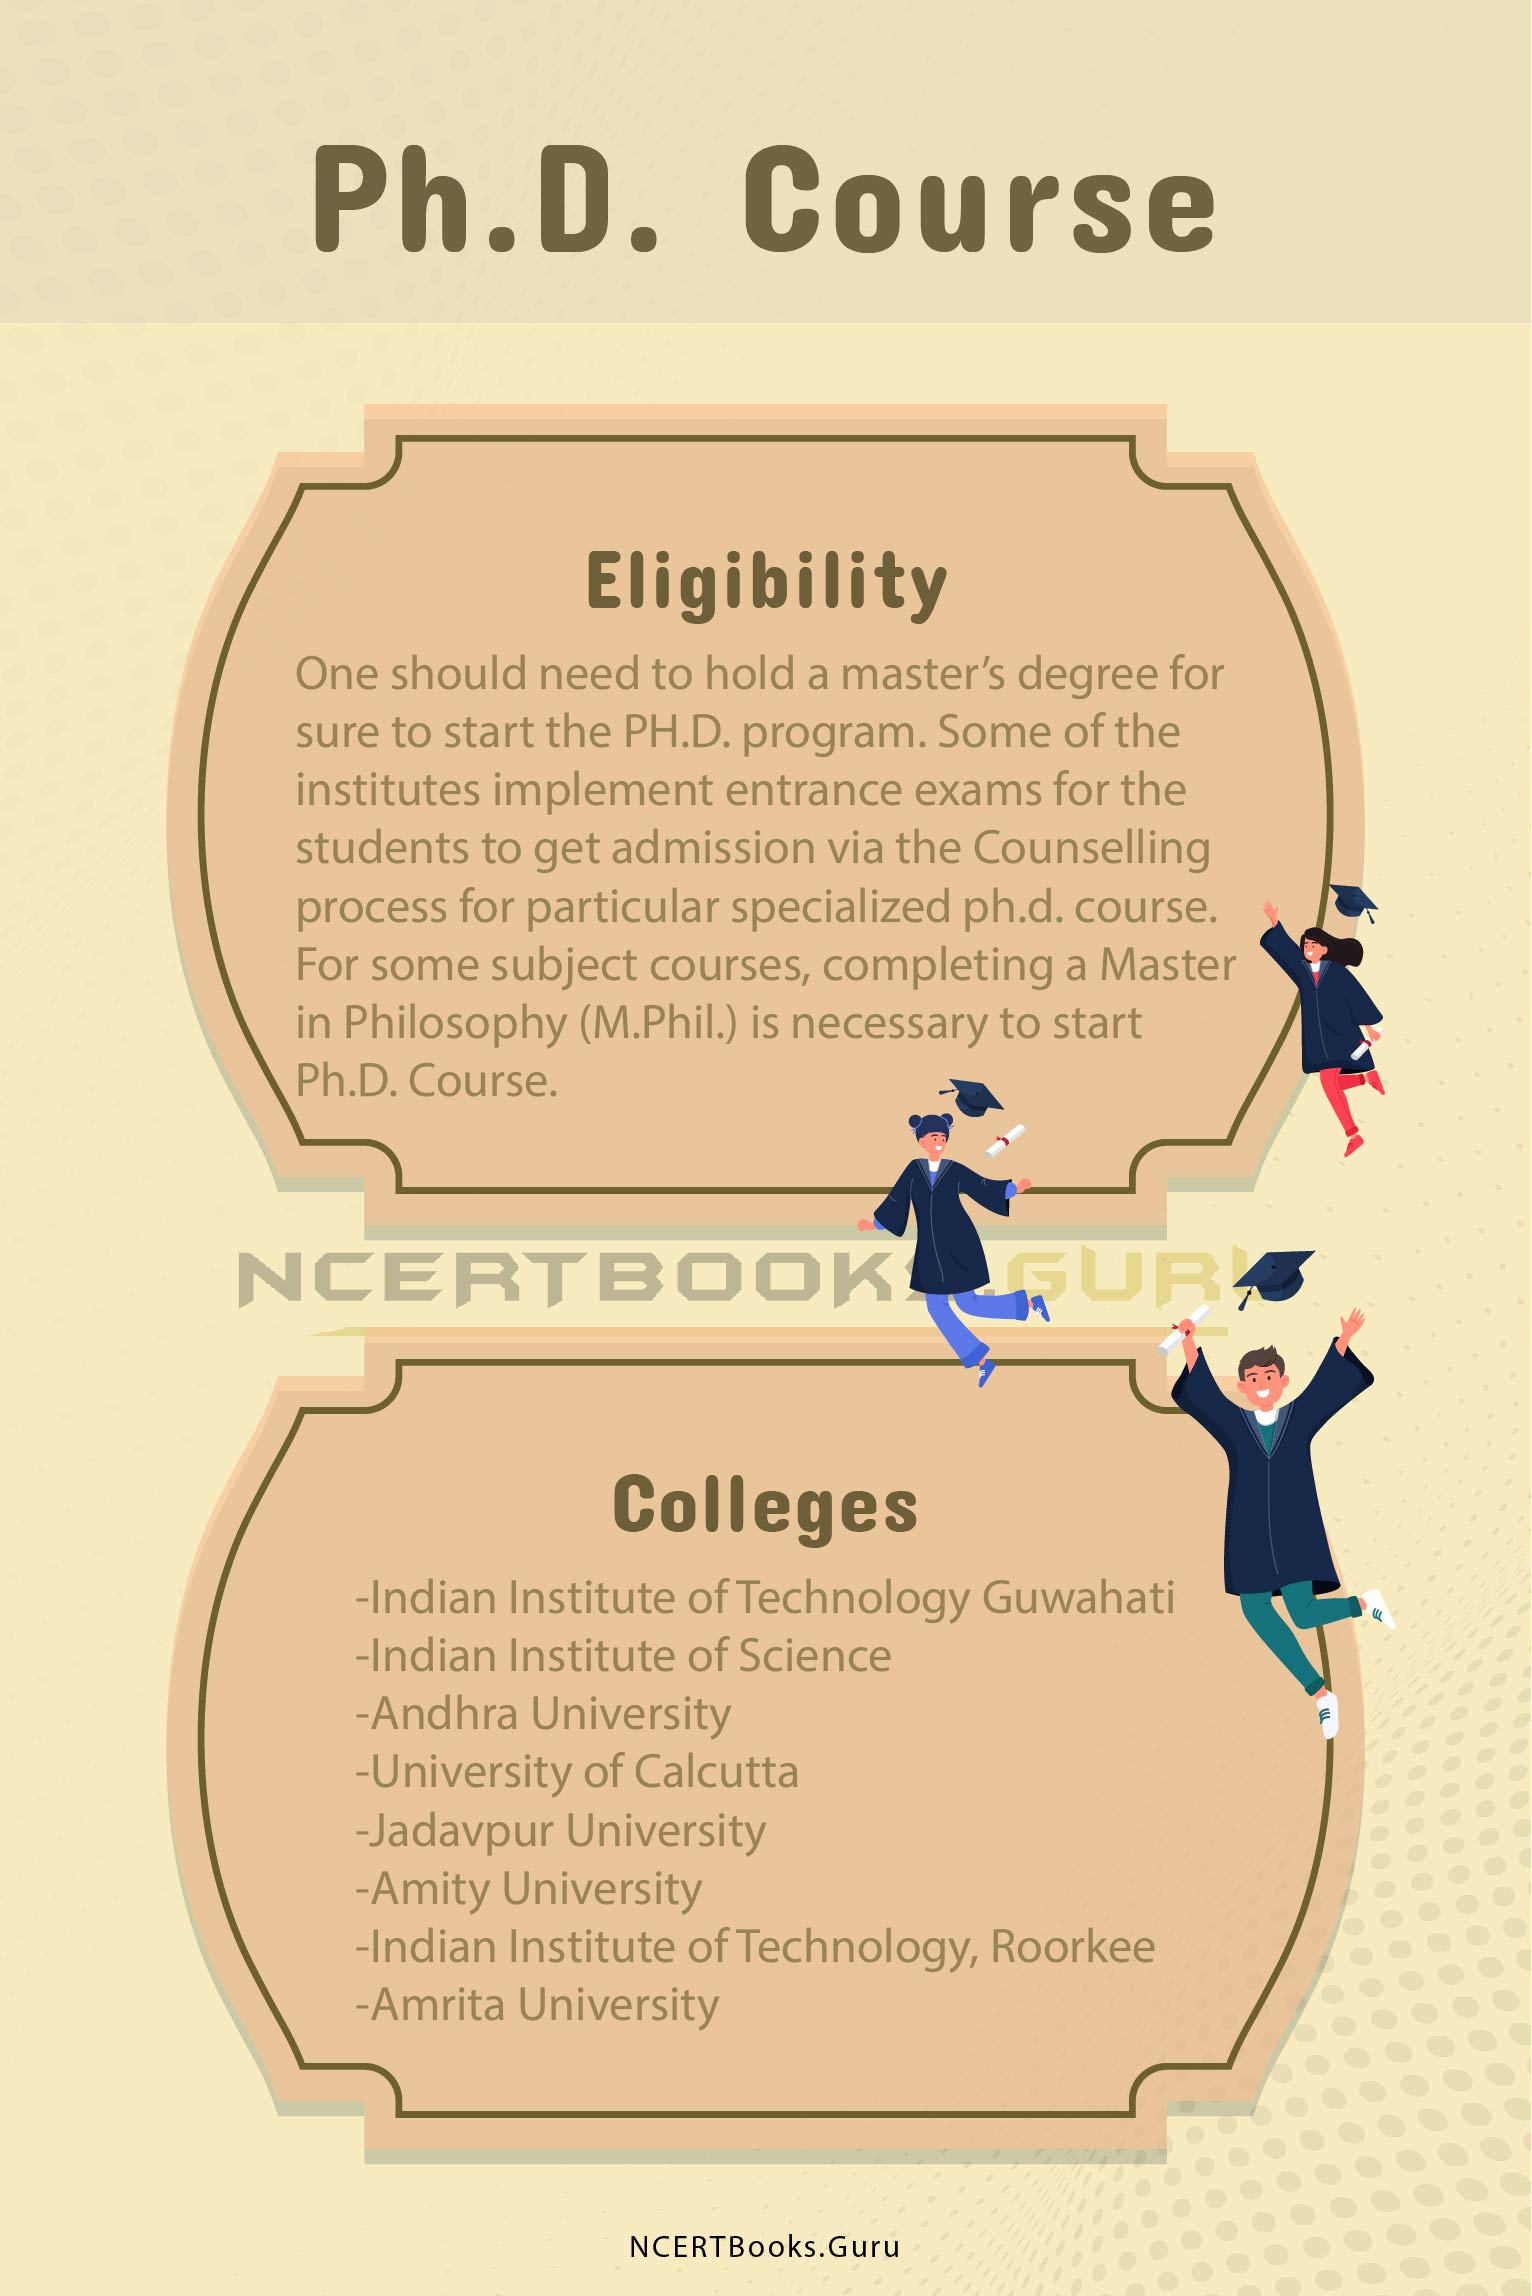 phd course eligibility